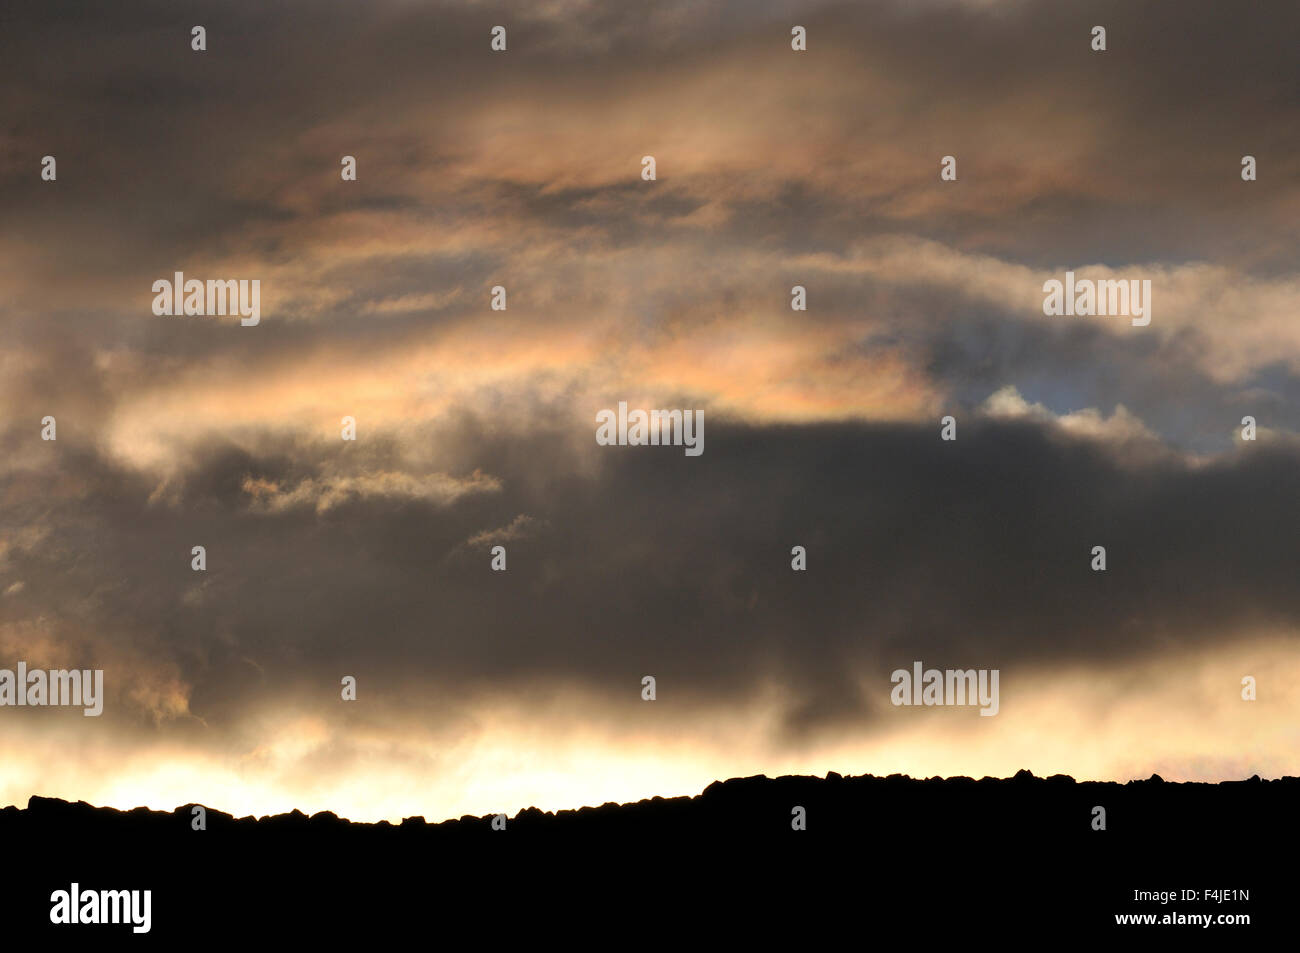 Imagen en color nube Dalarna carácter horizontal Escandinavia Suecia sky weather Foto de stock